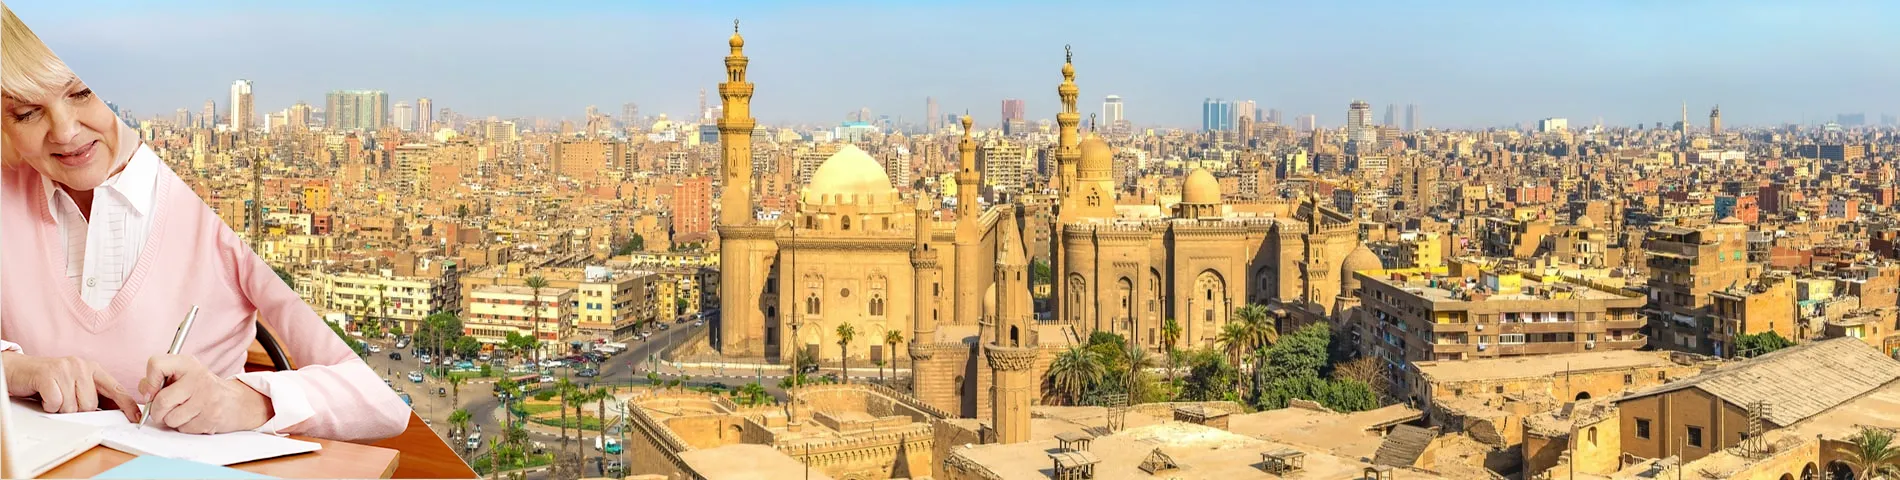 Kairó - Szenior (50 felett)